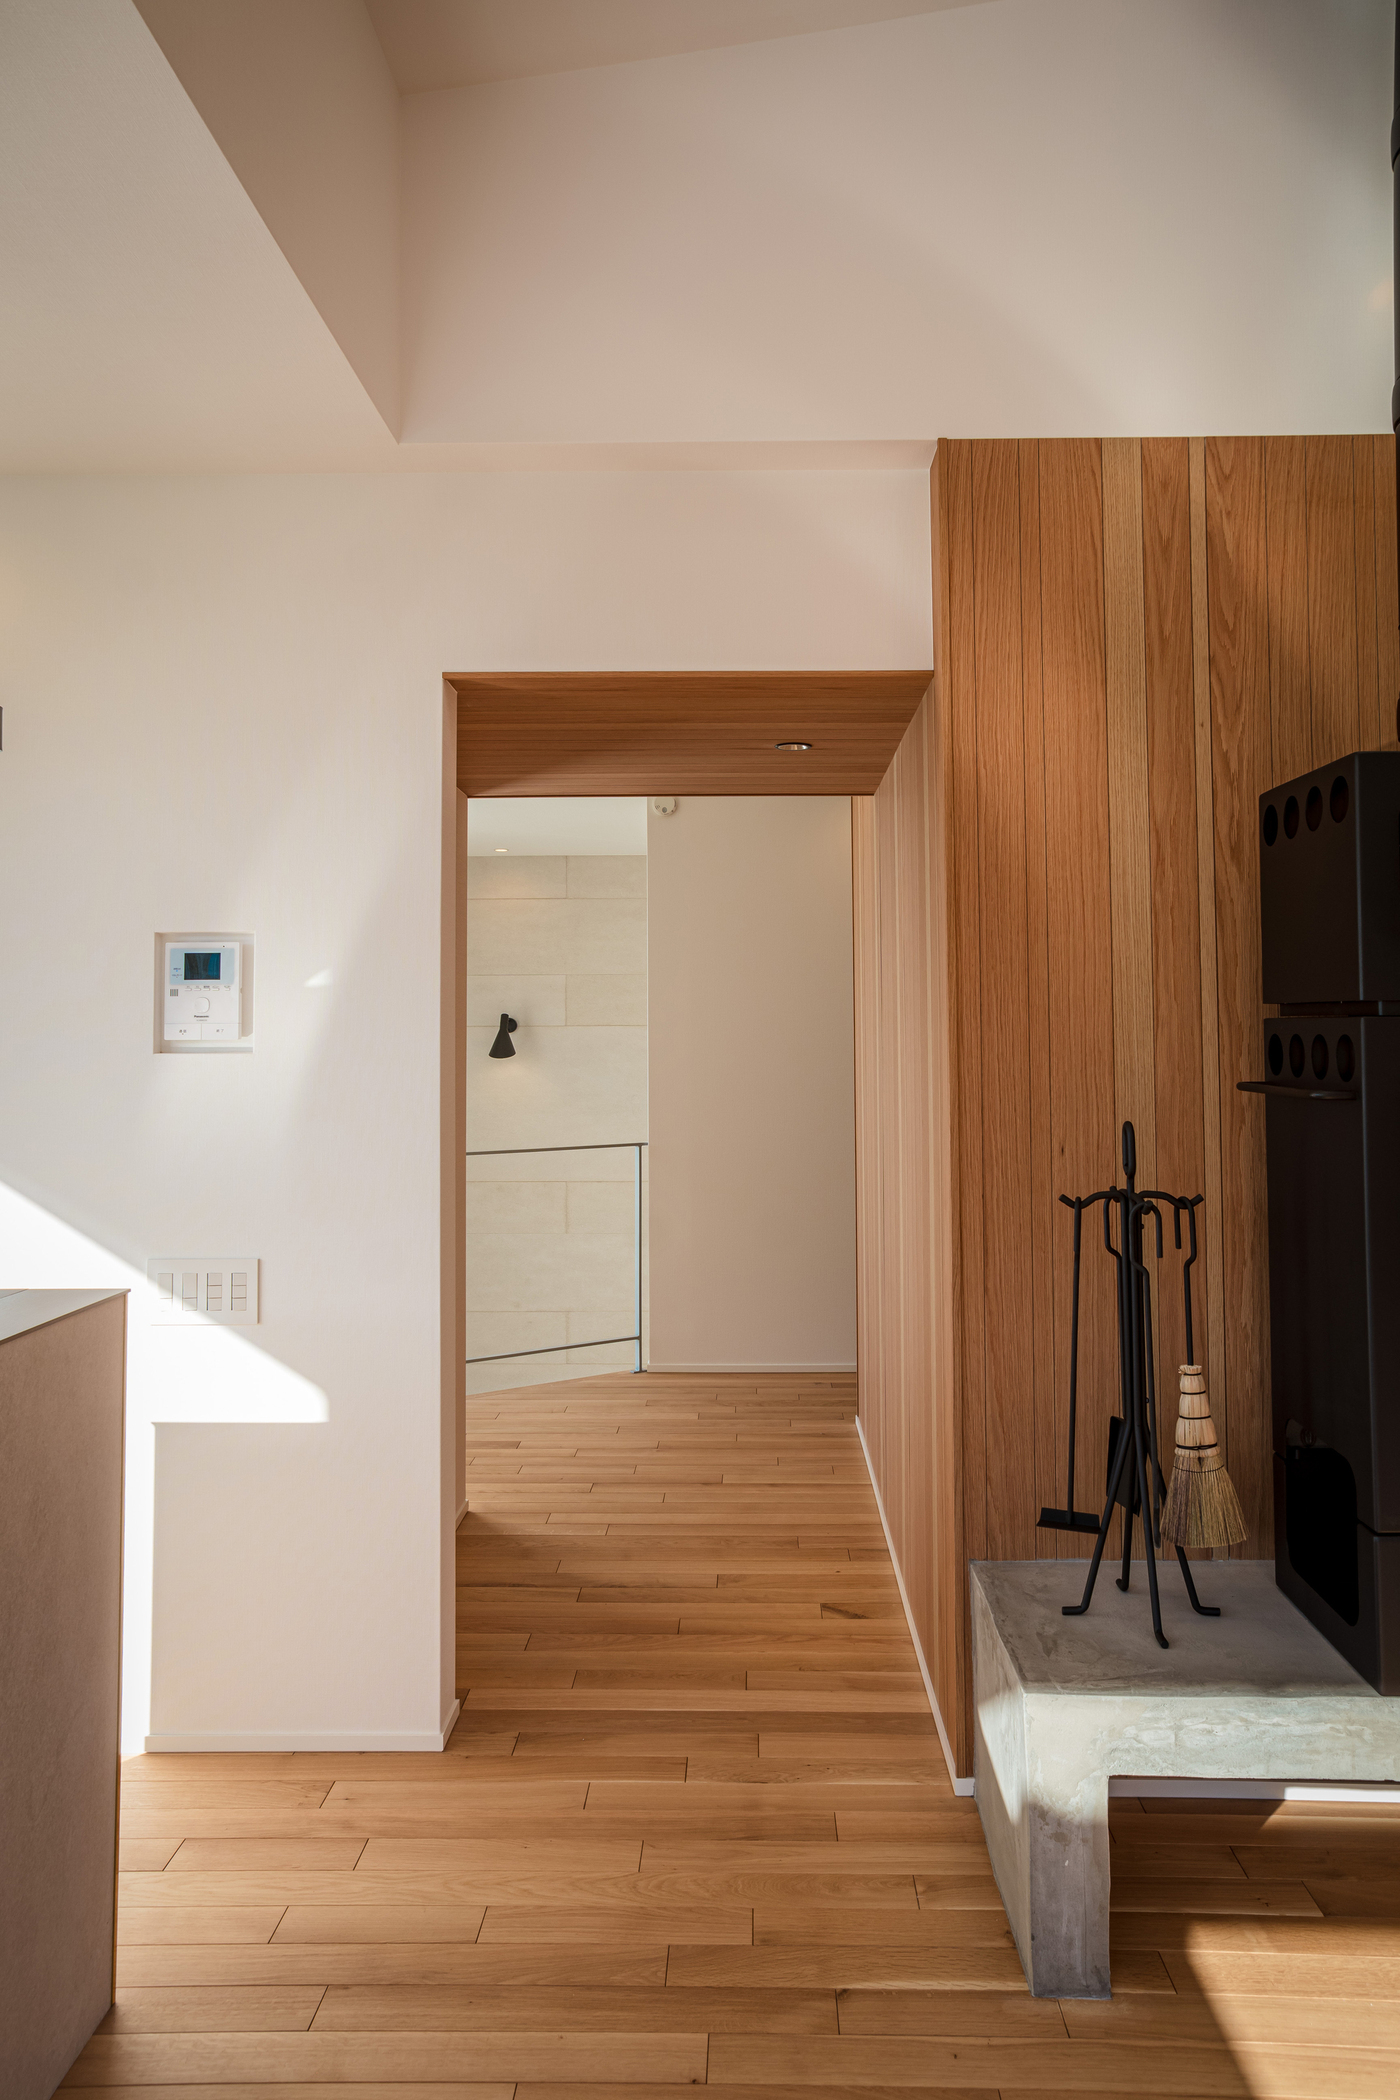 和歌山県橋本市の新築住宅プロジェクト『余白のある空間との繋がり 和歌山橋本の家』をWORKSに追加しました。